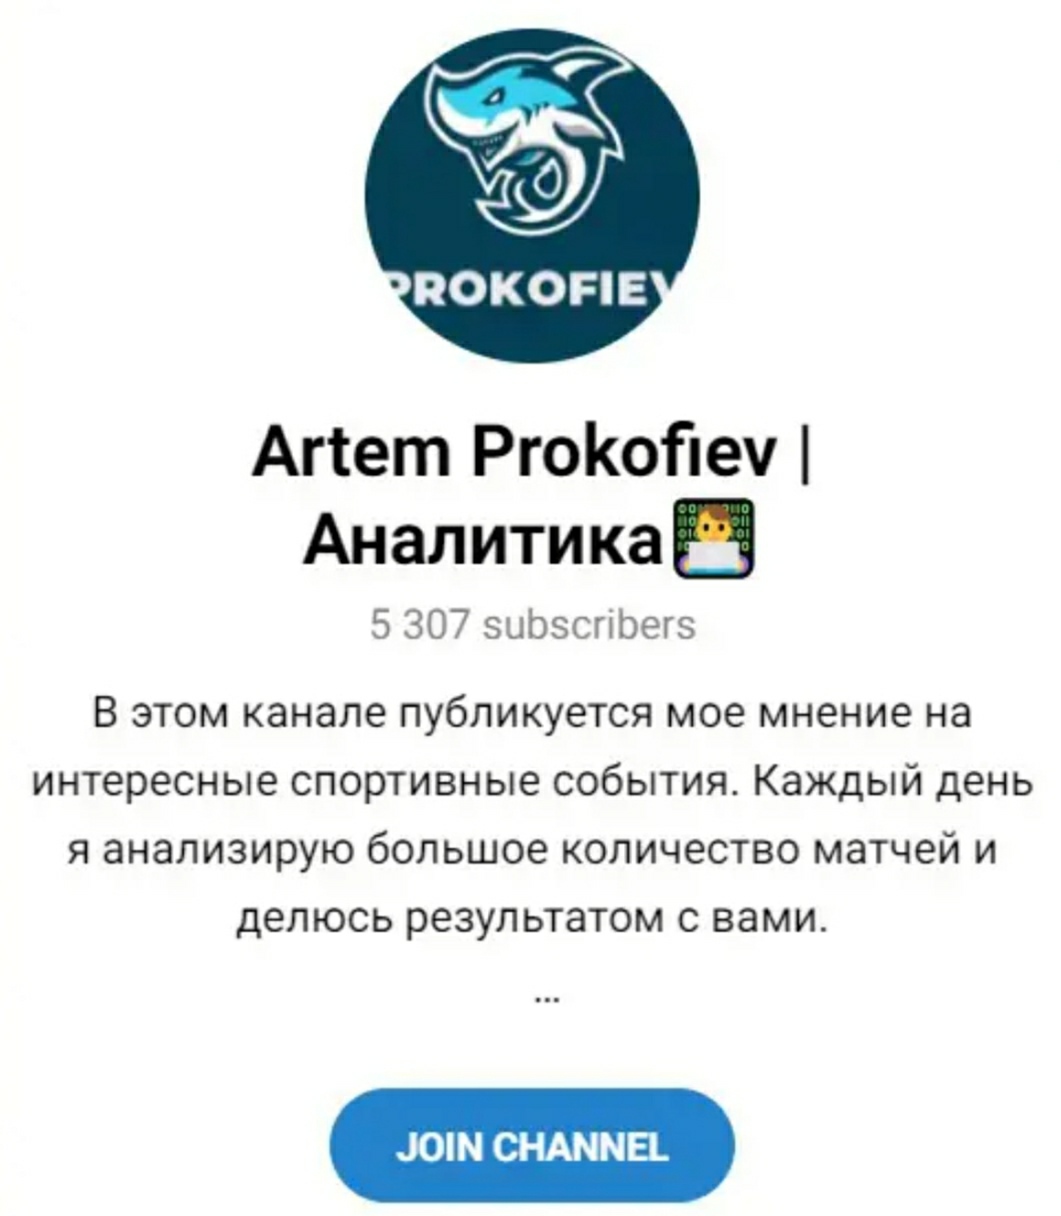 Артем Прокофьев телеграм